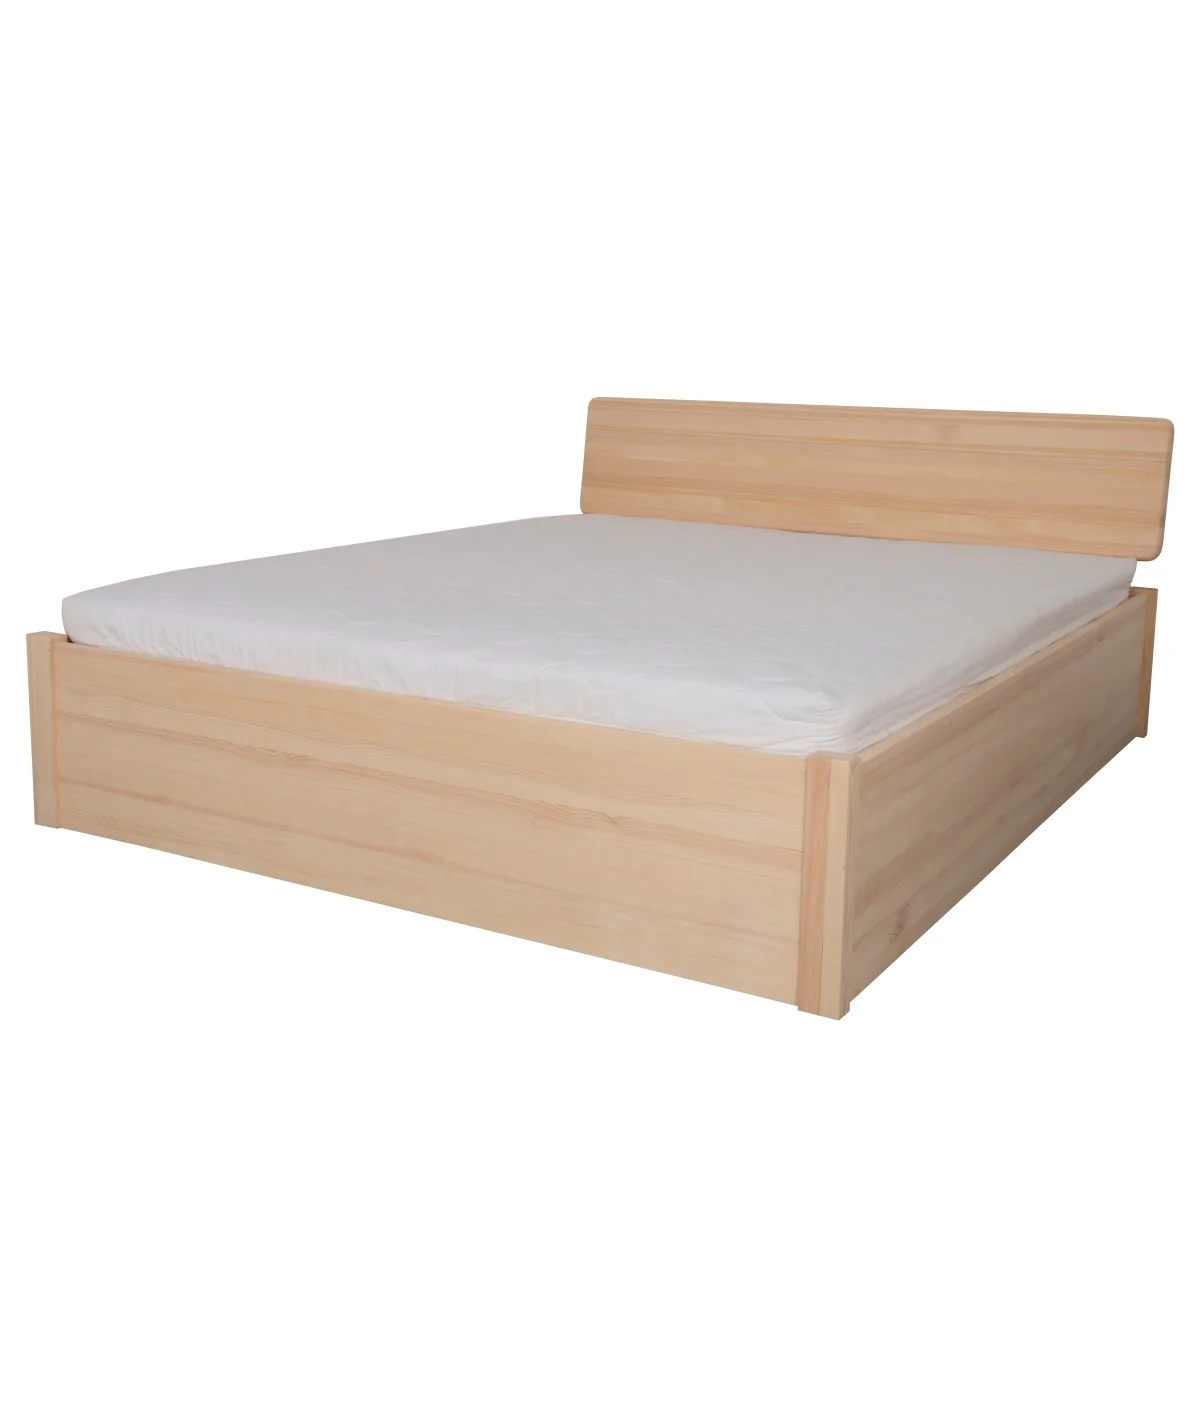 Łóżko bukowe SODALIT 3 STOLMIS podnoszone na ramie drewnianej